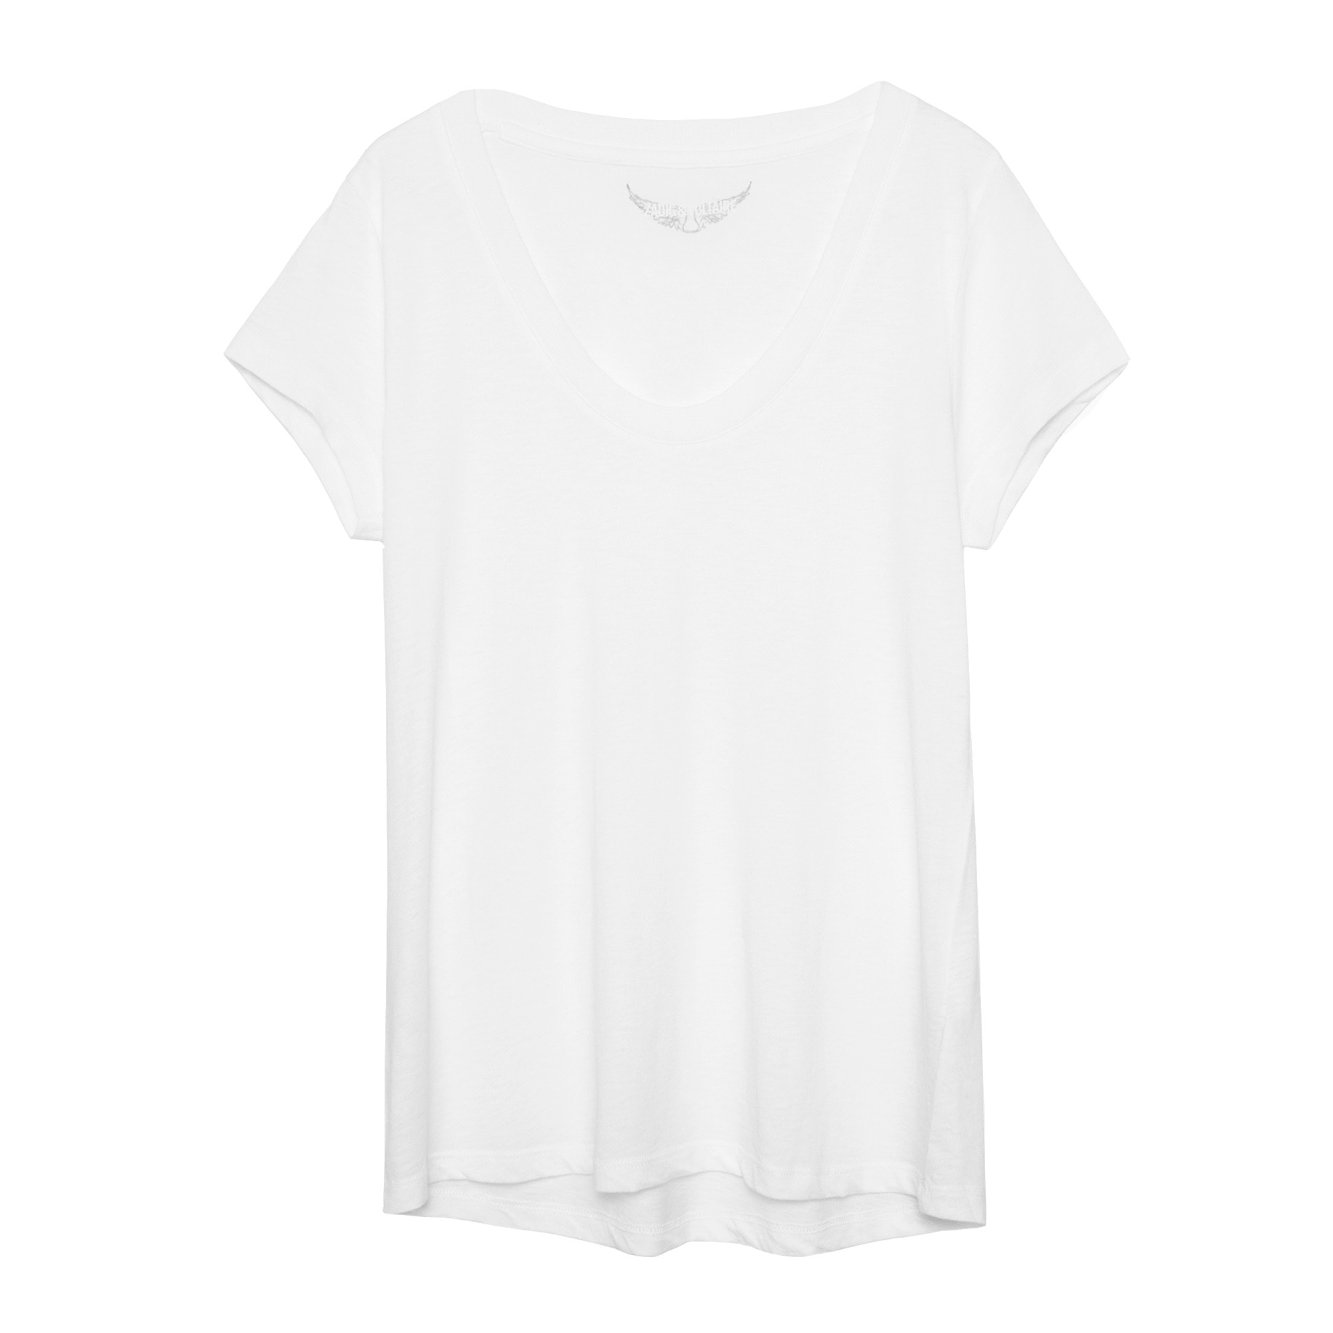 Zadig&Voltaire – T-shirt blanc femme en coton et modal. à <del>80 €</del> 64 € chez Zadig&Voltaire